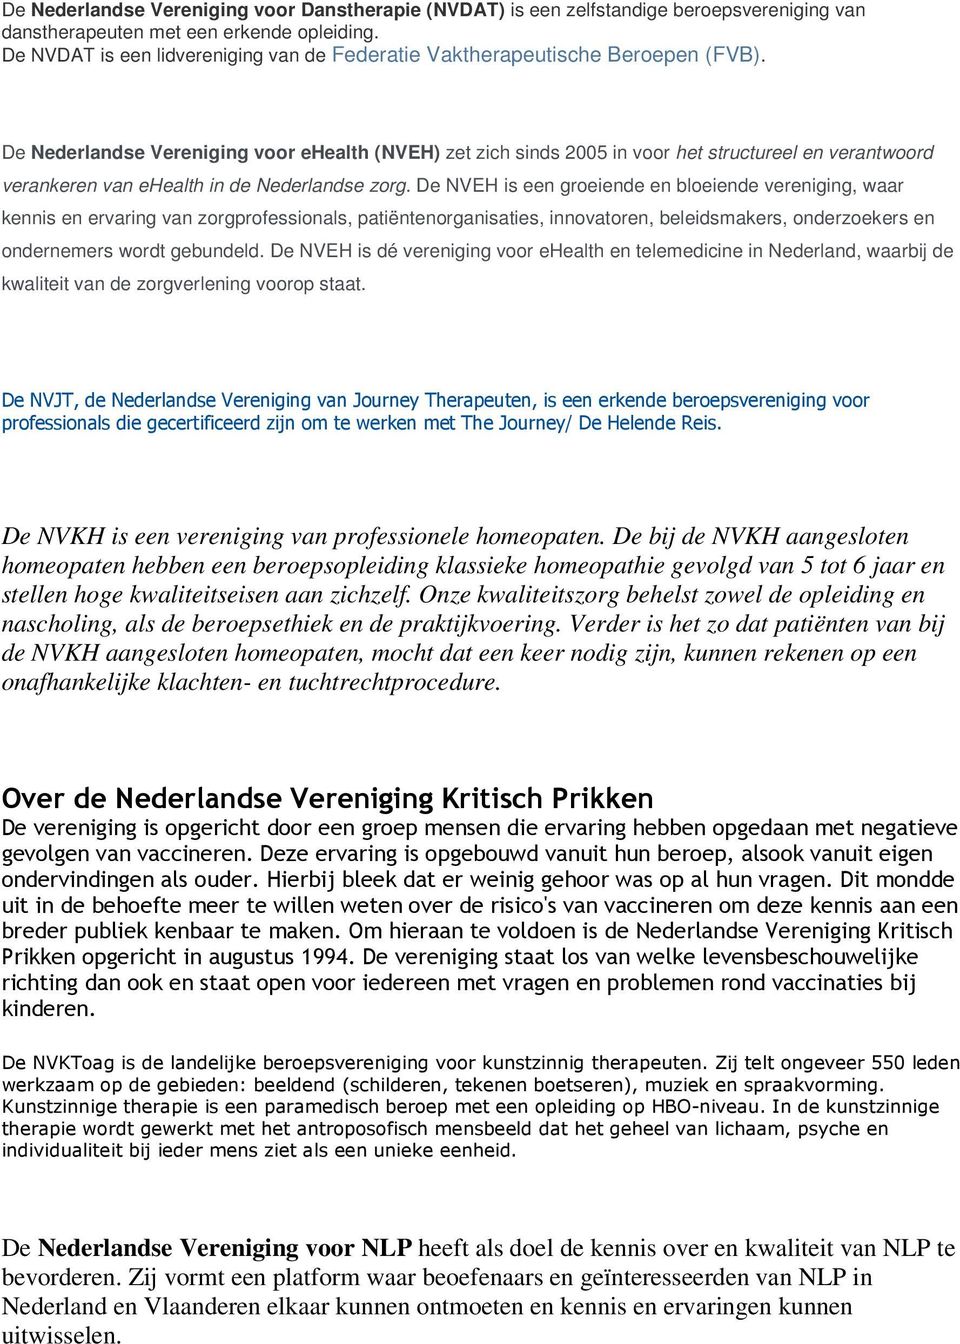 De Nederlandse Vereniging voor ehealth (NVEH) zet zich sinds 2005 in voor het structureel en verantwoord verankeren van ehealth in de Nederlandse zorg.